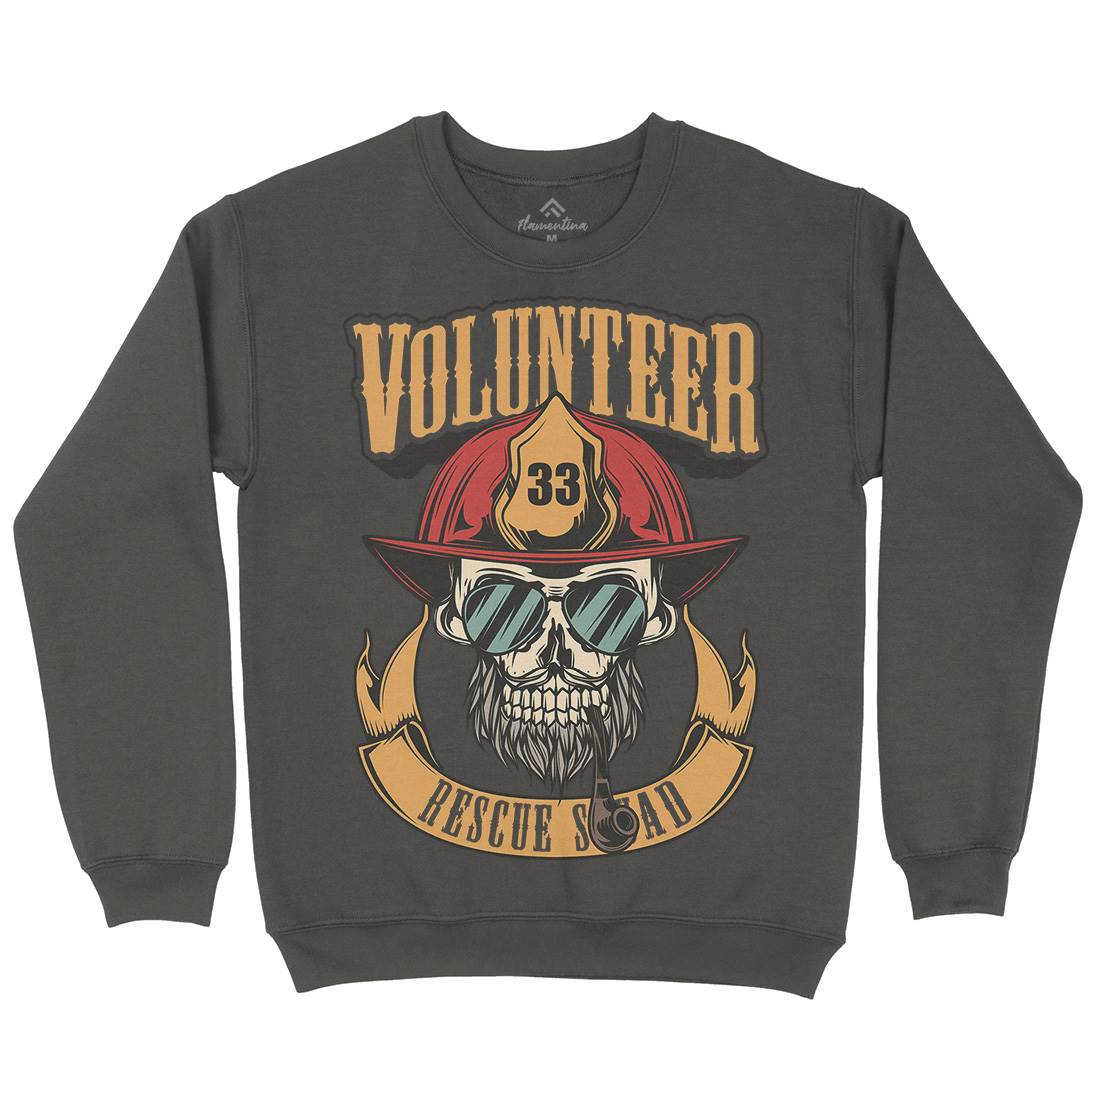 Volunteer Kids Crew Neck Sweatshirt Firefighters C829